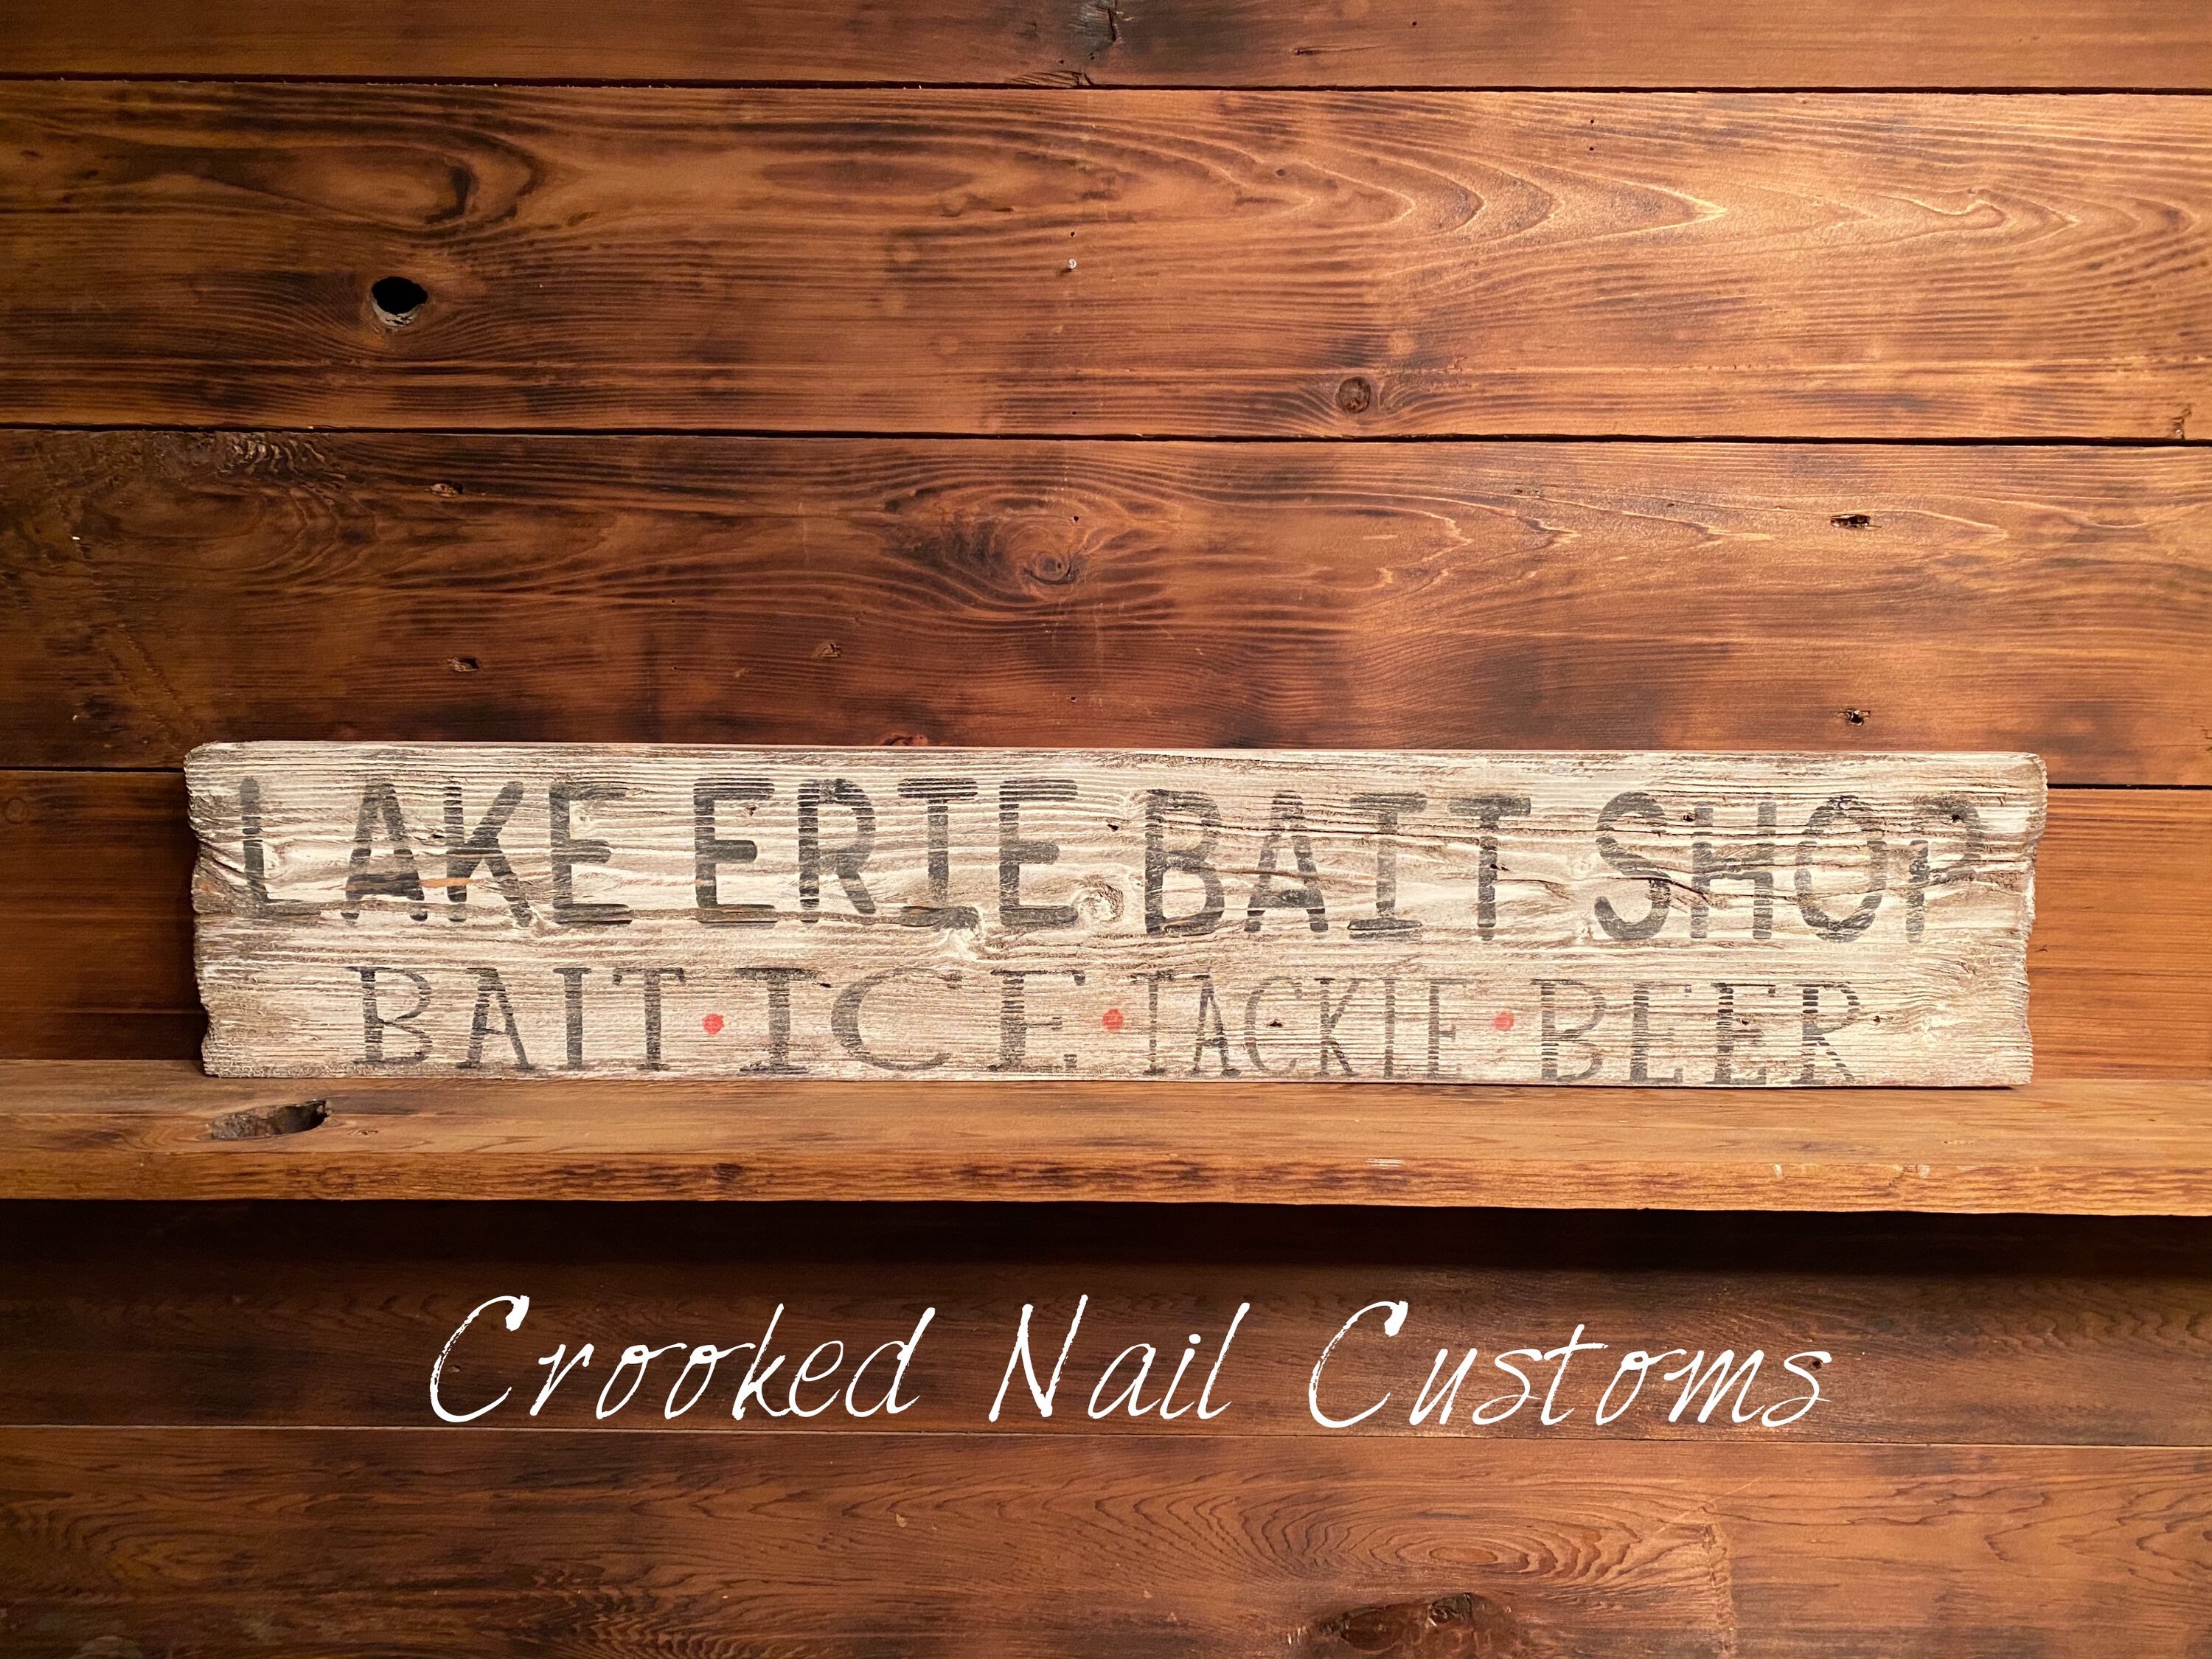 Bait Shop Sign Rustic Decor Vintage Fishing Sign Metal Sign 106180091029